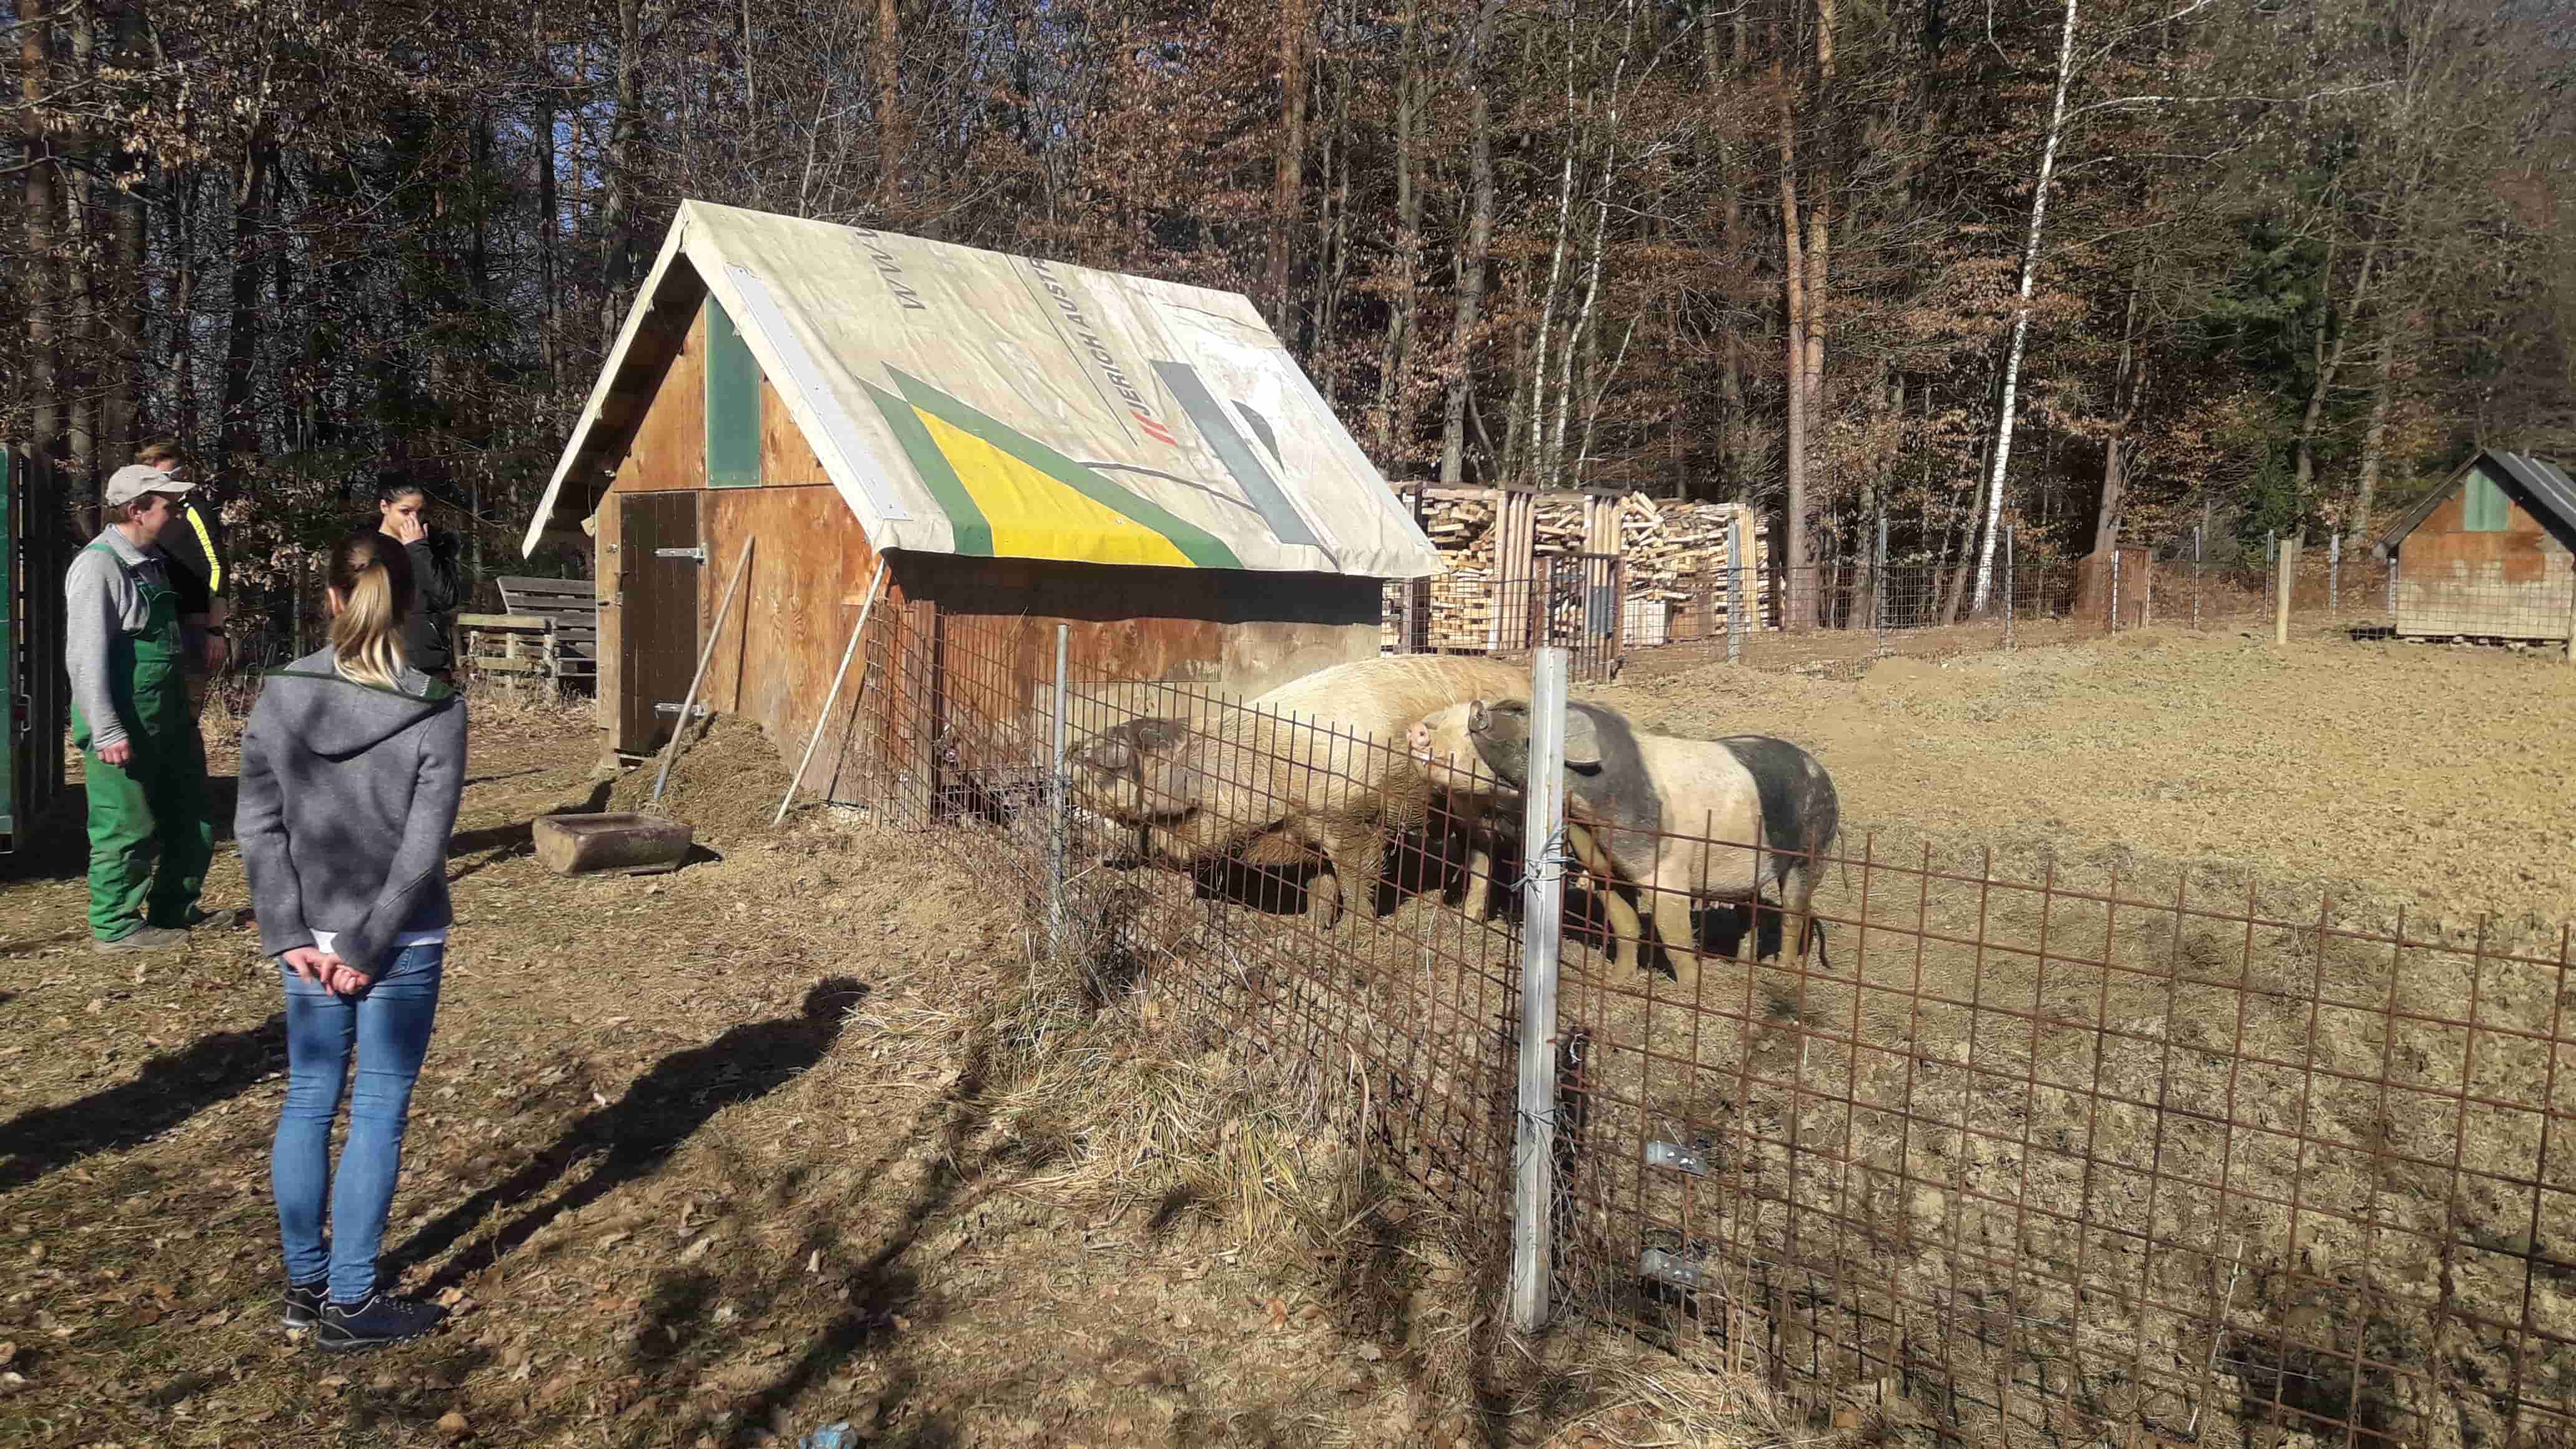 Schweine in Freilandhaltung beim kleinen, liebevollen Nebenerwerbsbauern Manfred Hofer.